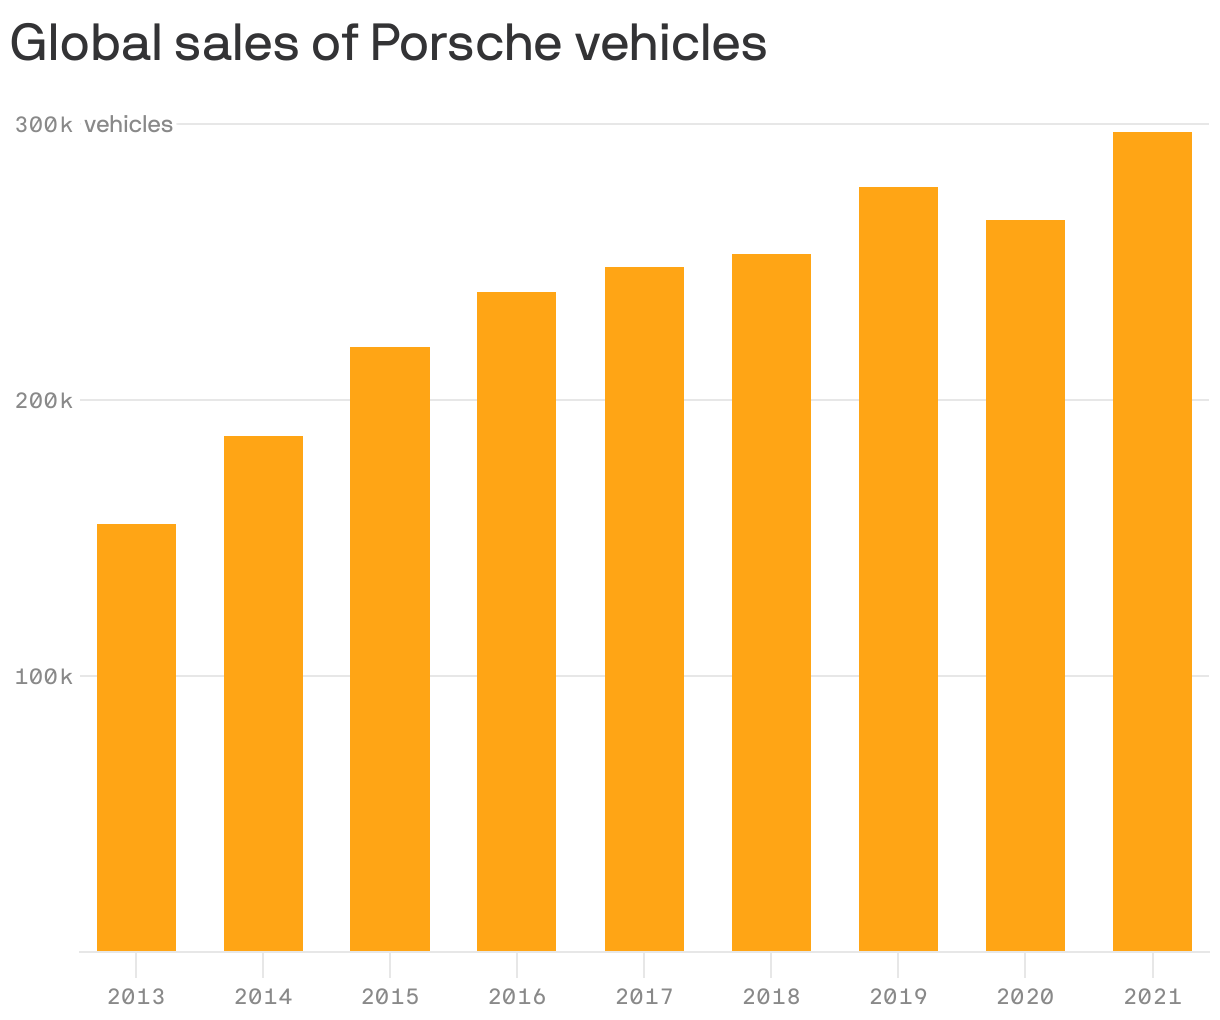 Global sales of Porsche vehicles